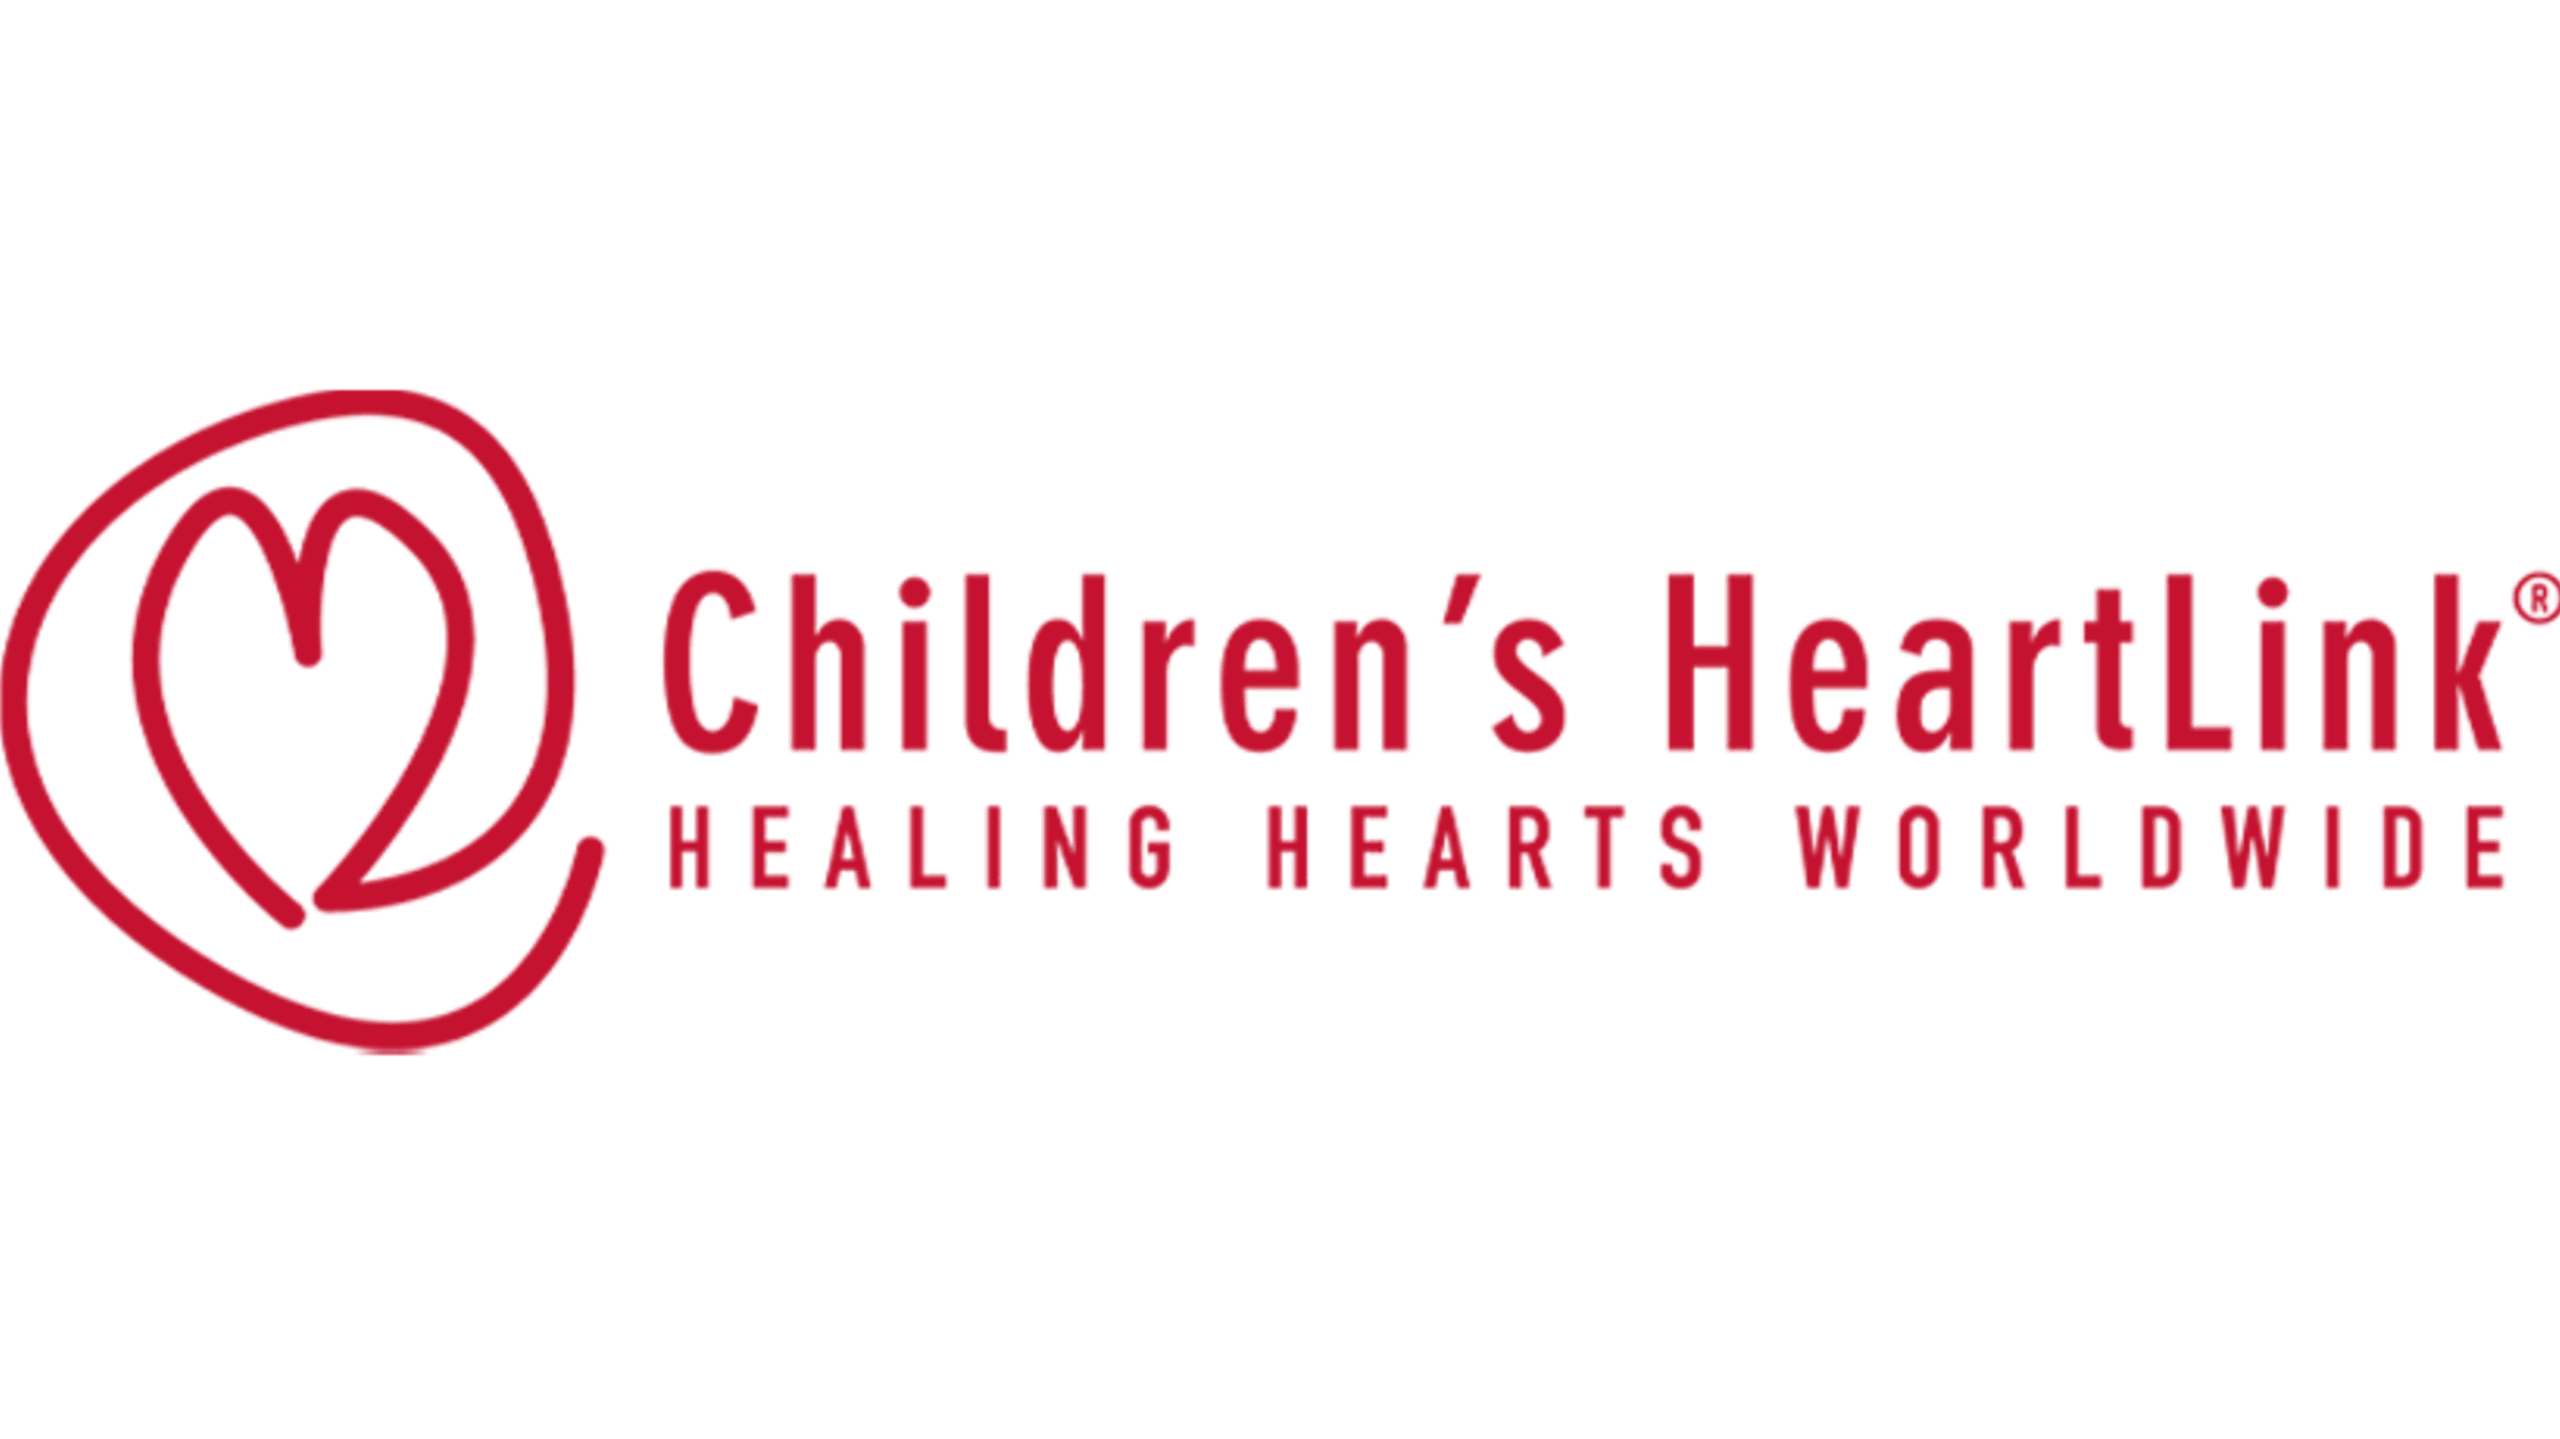 Children's HeartLink